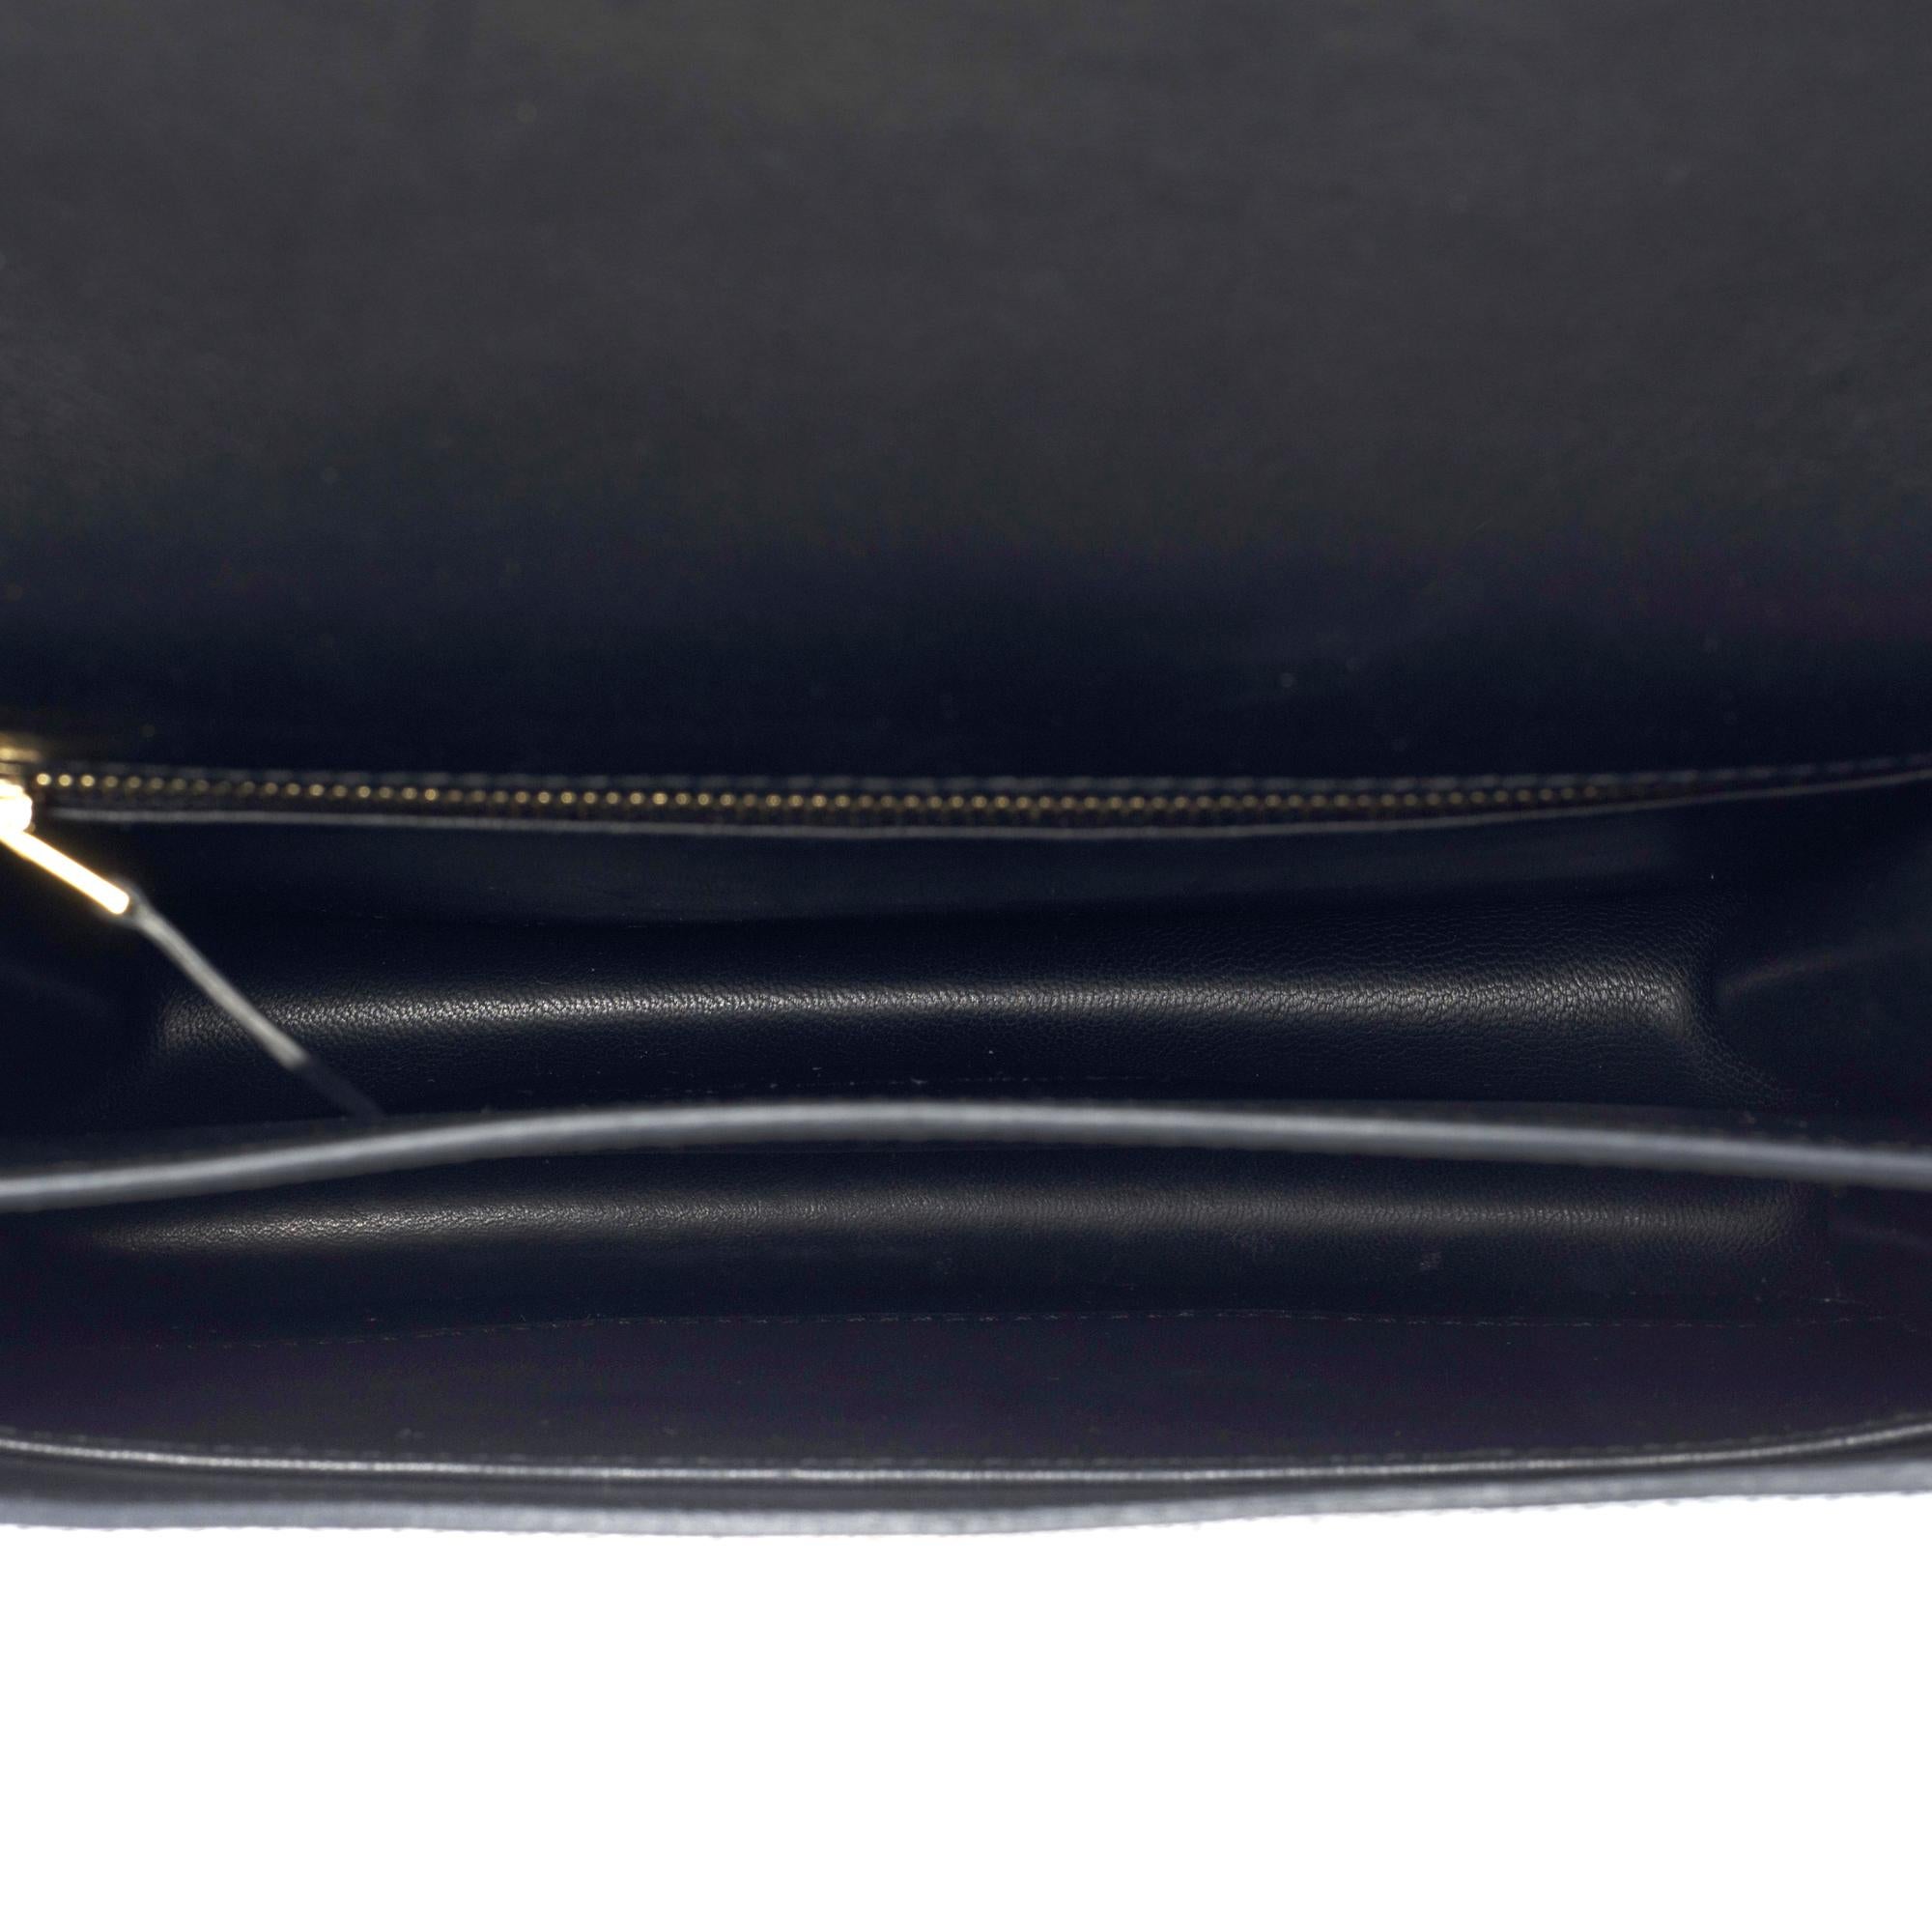 Gorgeous Hermès Constance shoulder bag in black epsom leather , GHW 4